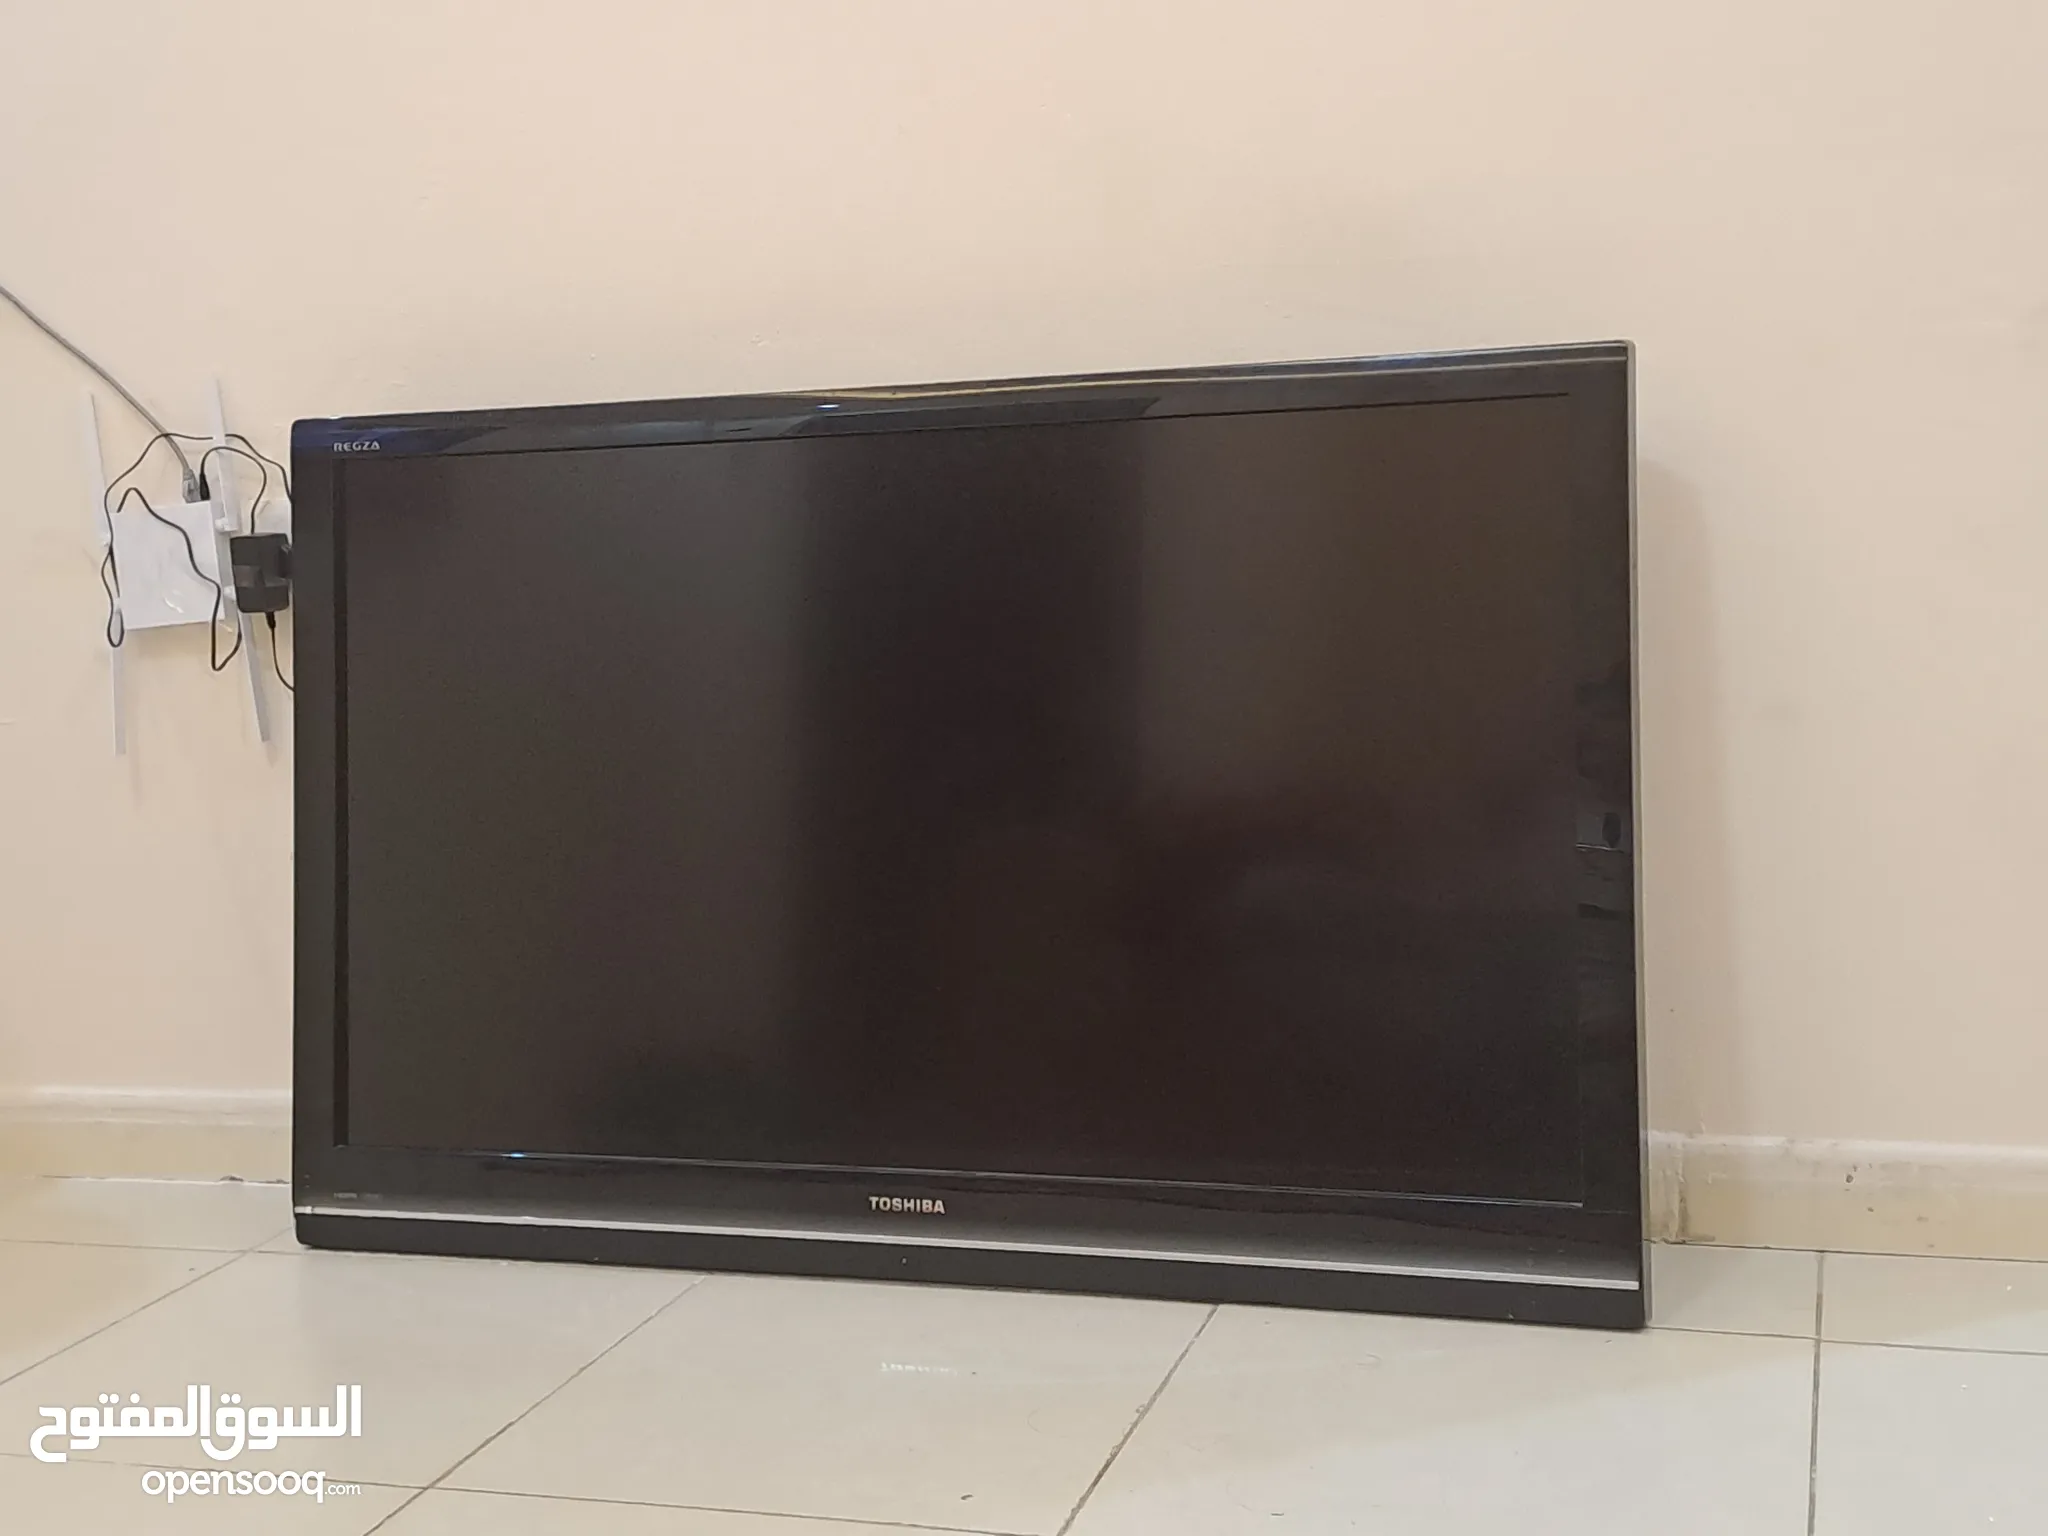 شاشات توشيبا للبيع : افضل تلفزيون توشيبا : ارخص الاسعار : جميع المقاسات :  الإمارات | السوق المفتوح